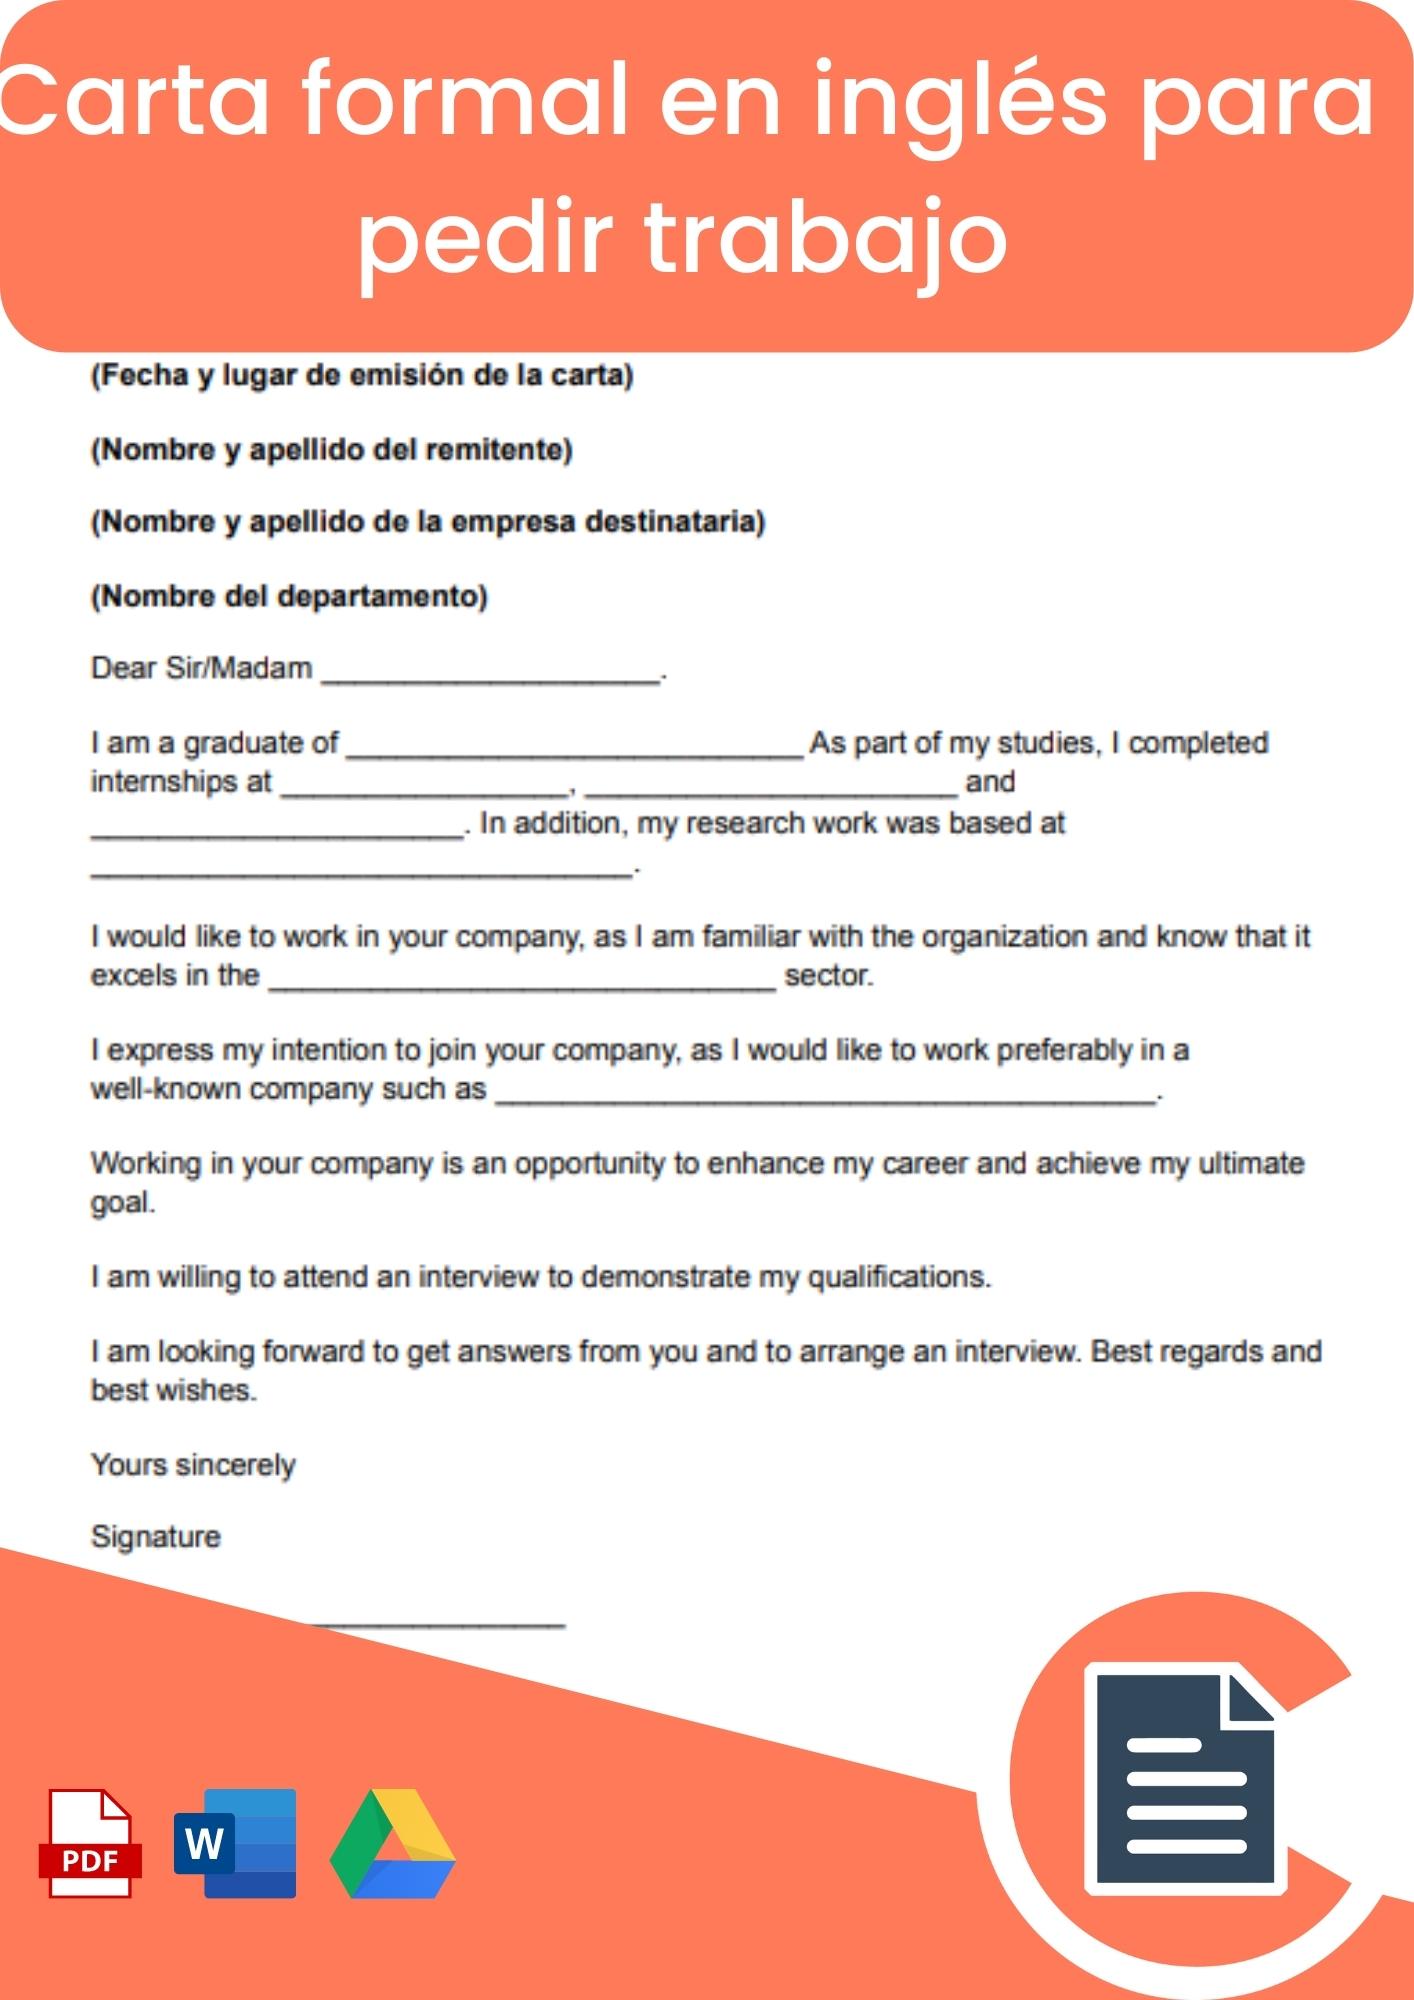 Carta formal en inglés para pedir trabajo